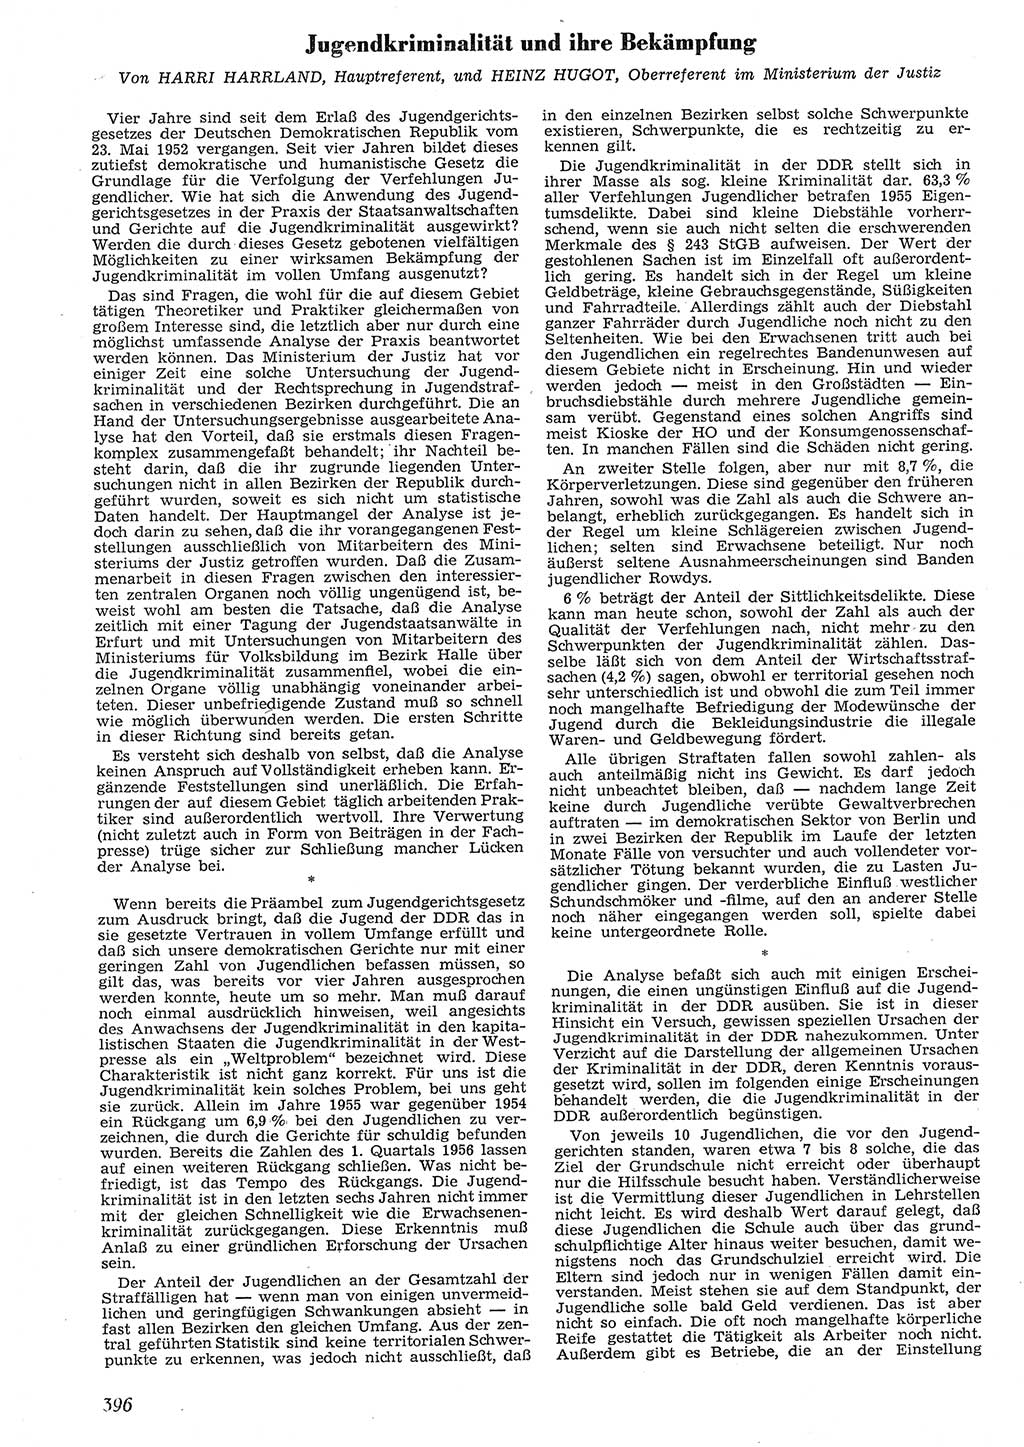 Neue Justiz (NJ), Zeitschrift für Recht und Rechtswissenschaft [Deutsche Demokratische Republik (DDR)], 10. Jahrgang 1956, Seite 396 (NJ DDR 1956, S. 396)